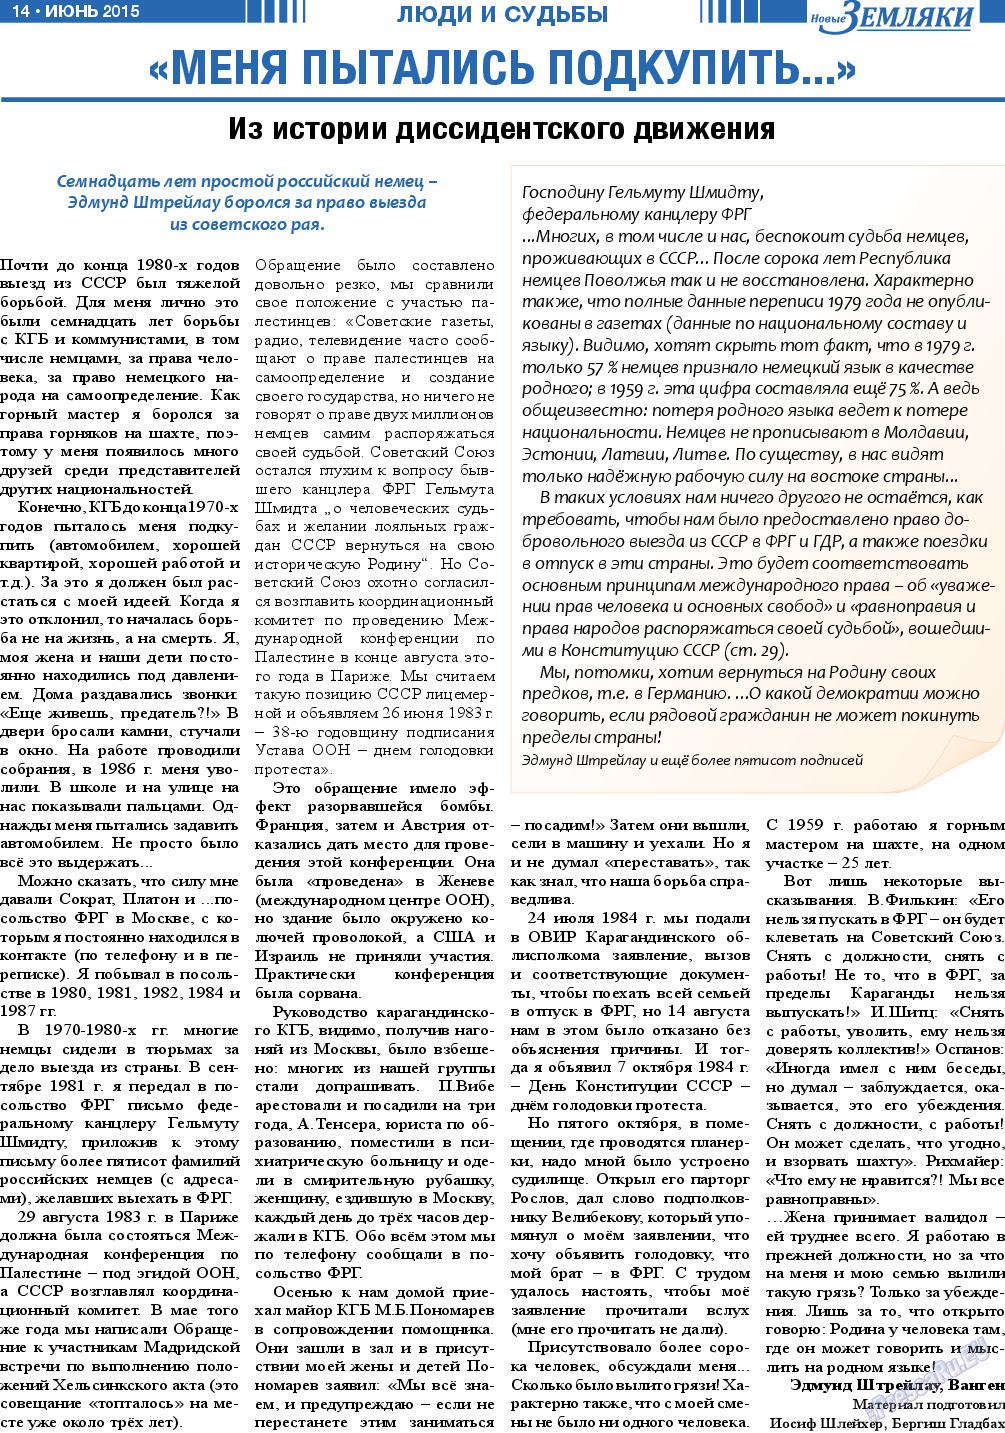 Новые Земляки, газета. 2015 №6 стр.14